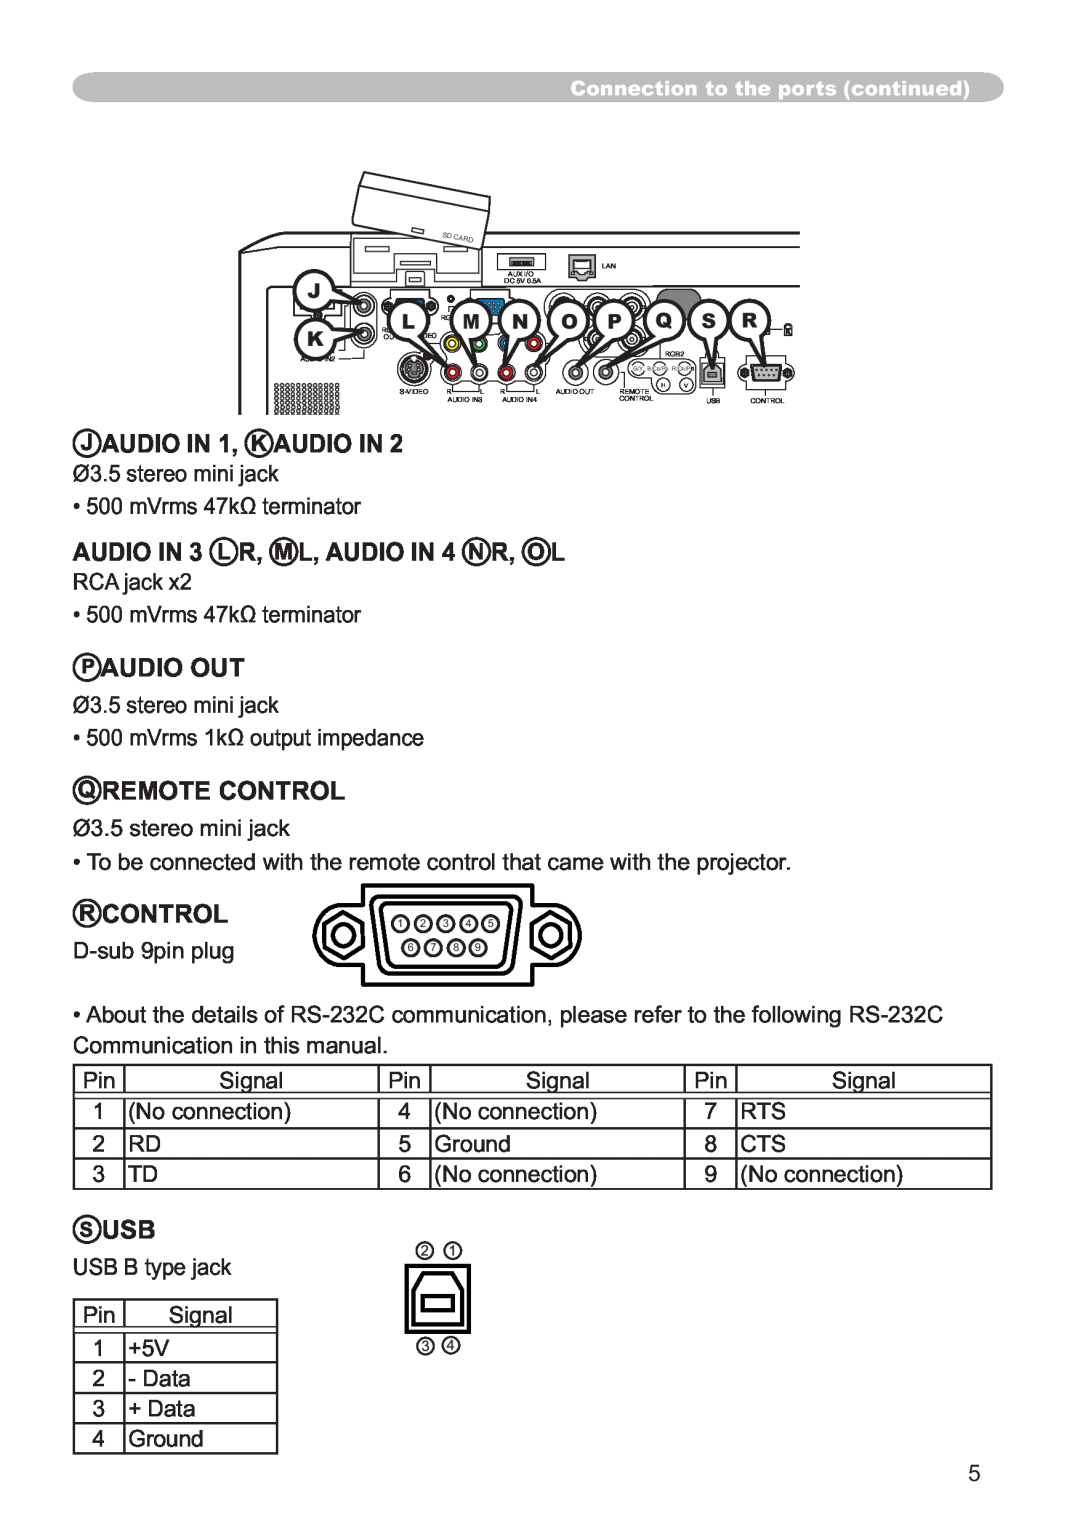 Hitachi CP-X809W J AUDIO IN 1, K AUDIO IN, AUDIO IN 3 L R, M L, AUDIO IN 4 N R, O L, P Audio Out, Q Remote Control, S Usb 